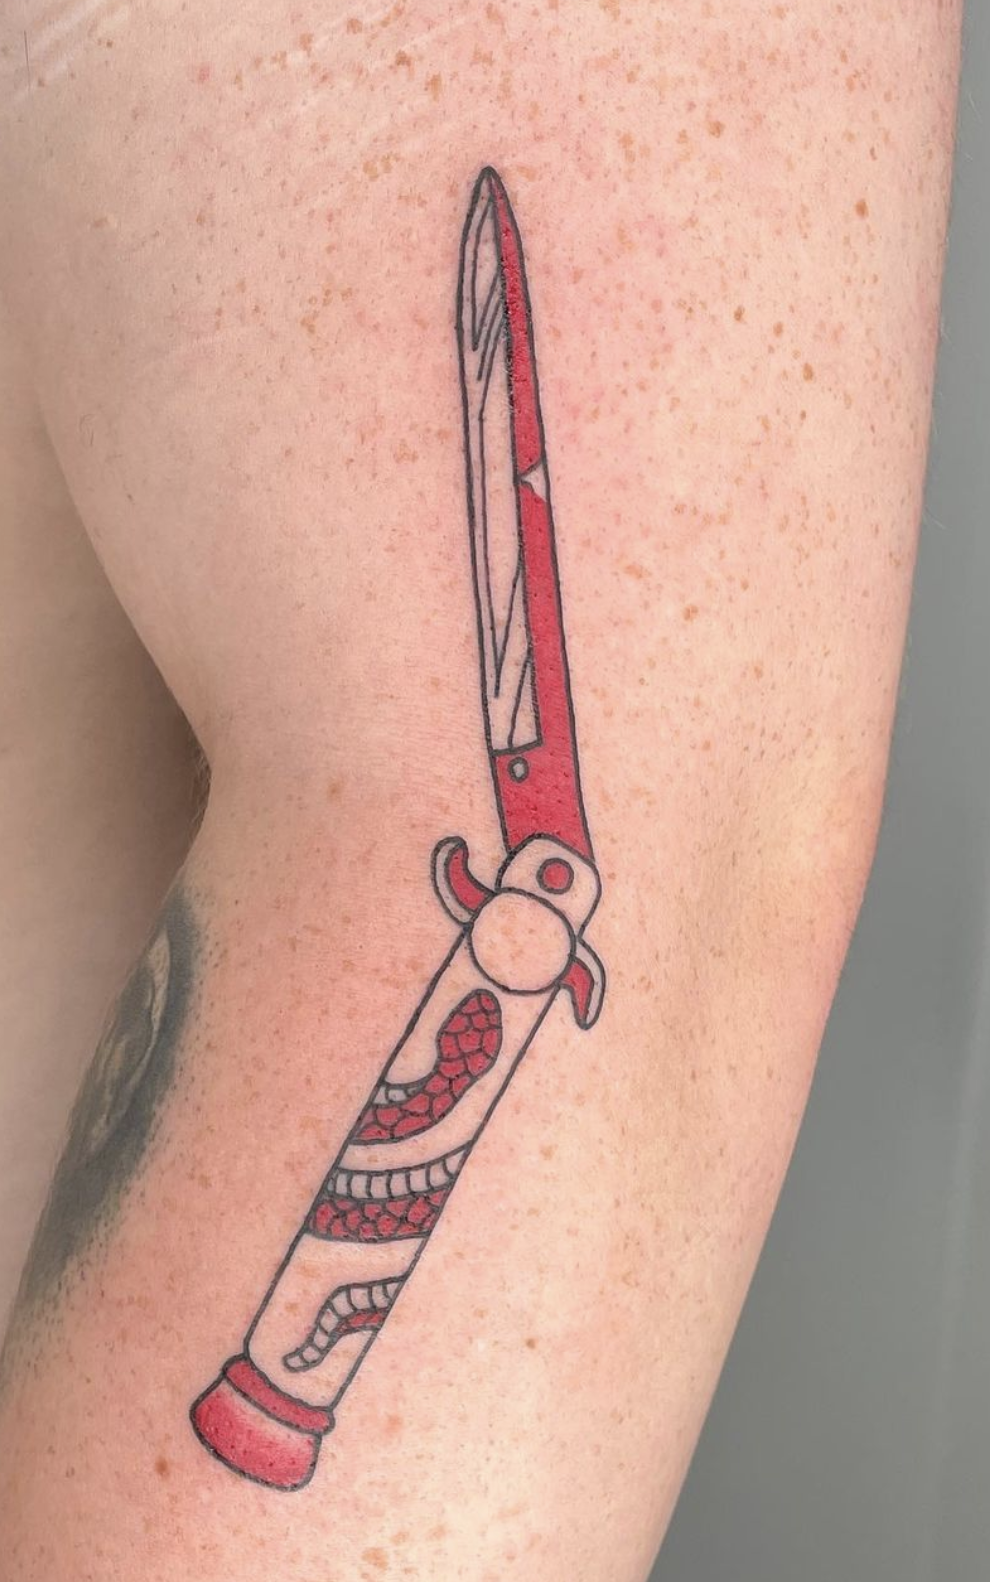 JOE PRUTZ  A Human Swiss Army Knife  Original Skin